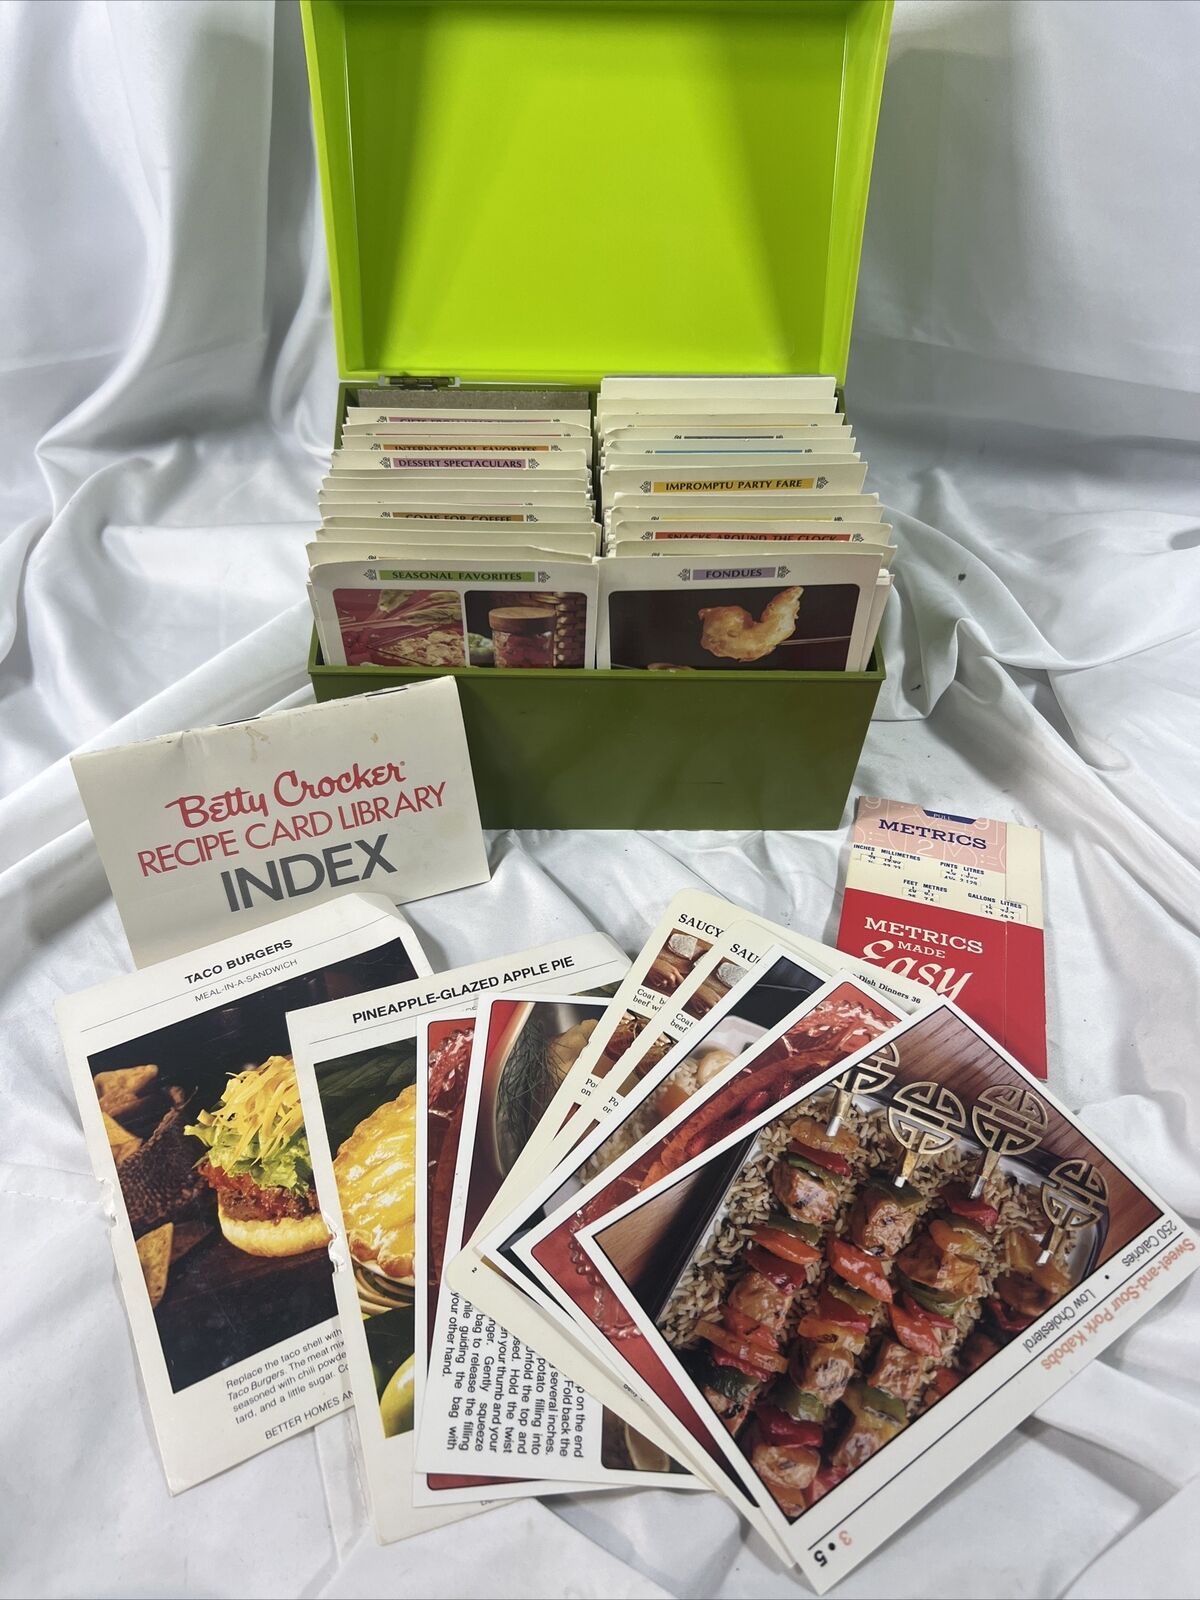 1971 The BETTY CROCKER Recipe Card Library Recipes. Avocado Green + Ext Recipes